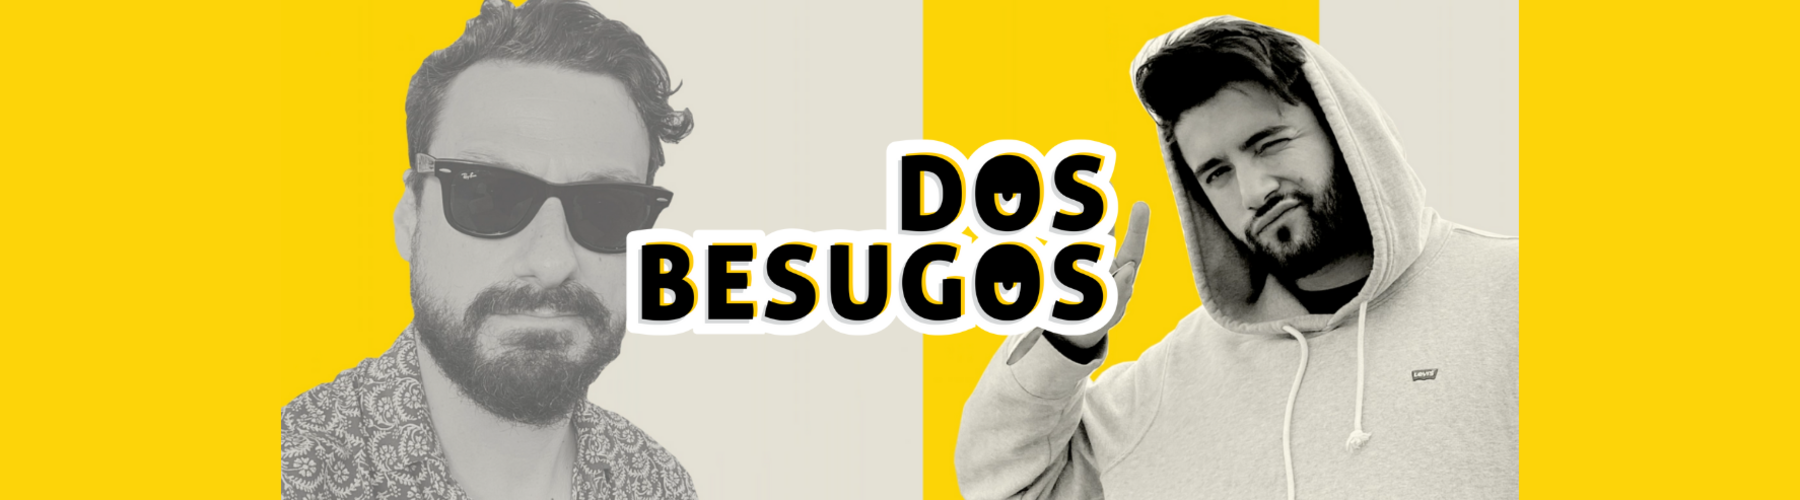 Isaac F. Corrales y Telmo Trenado presentan 'Dos besugos', un podcast exclusivo de Podimo